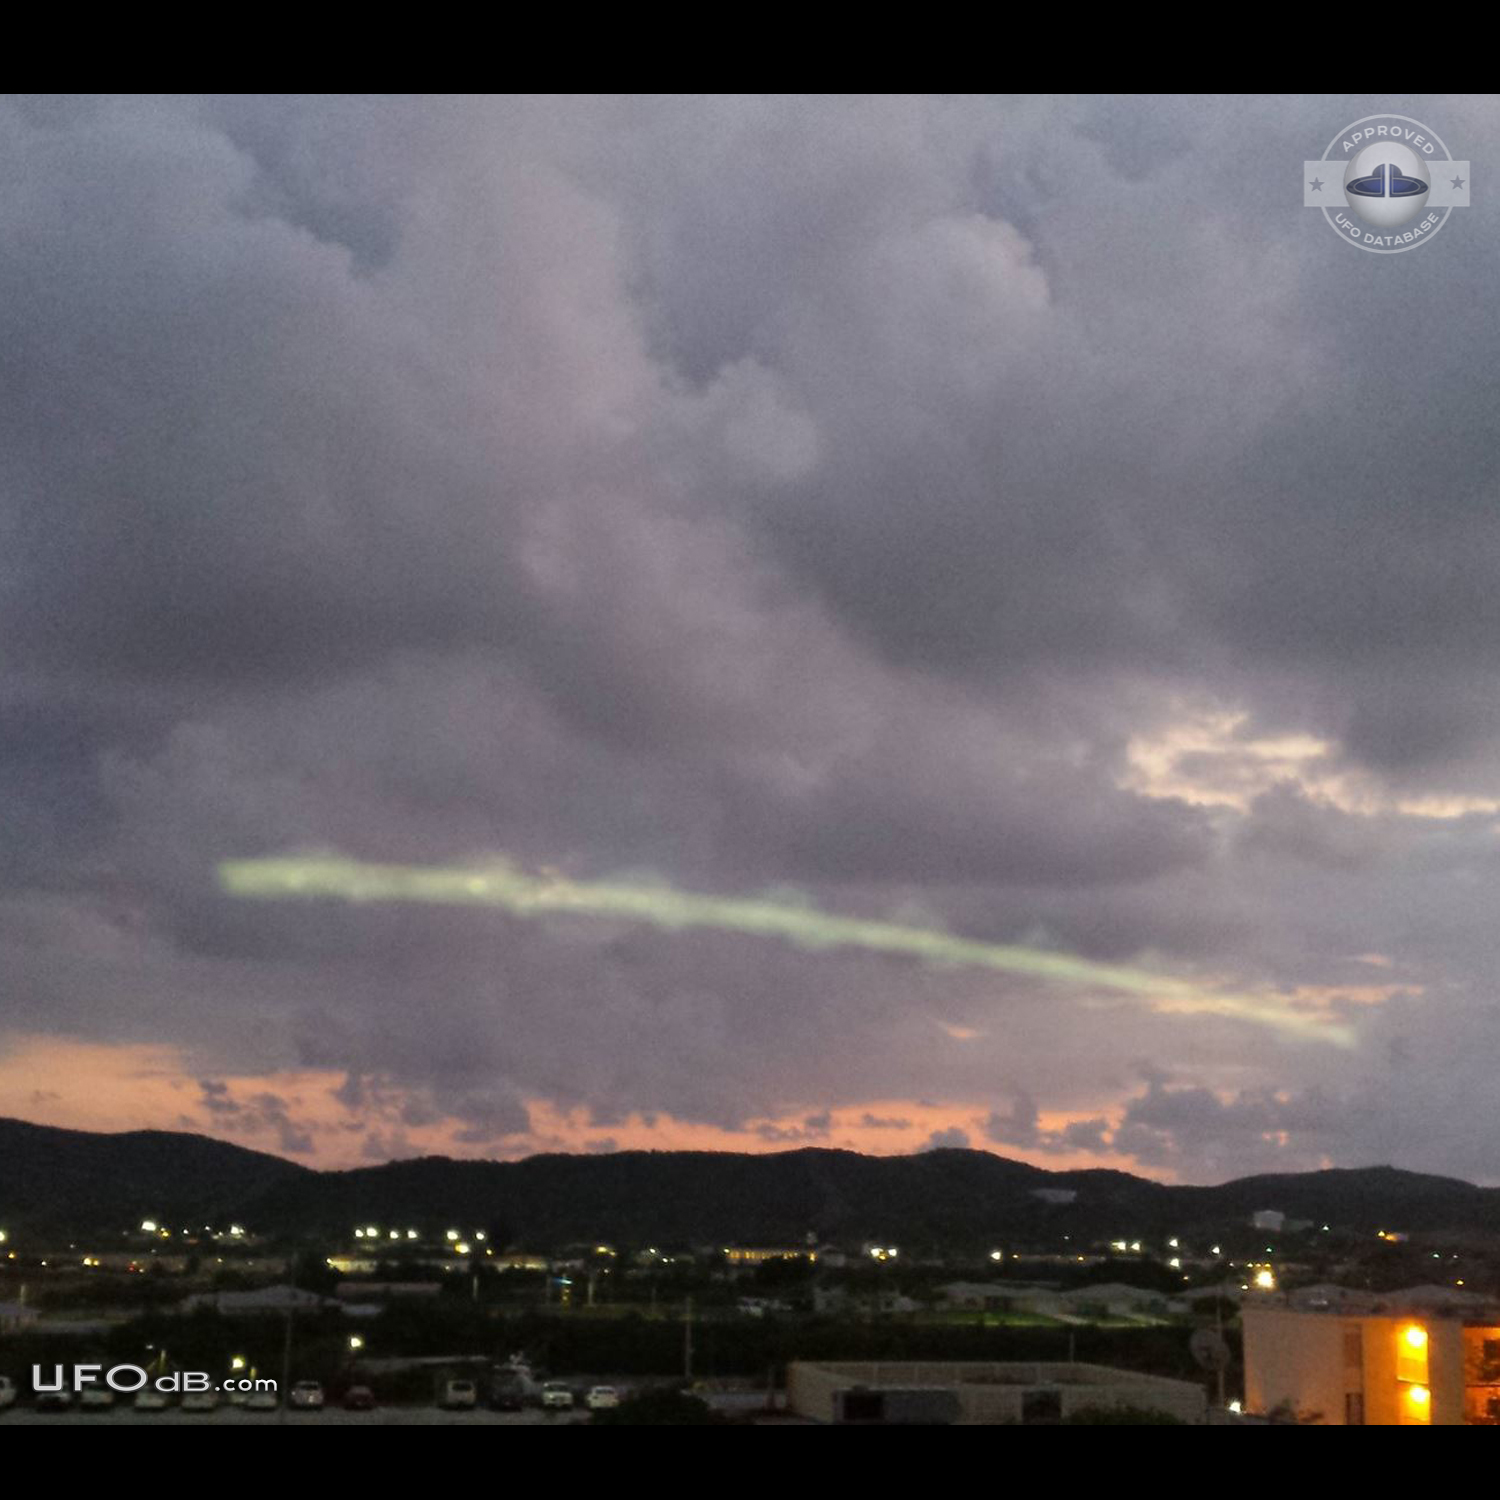 Strange UFO in the sky near Guantanamo prison, Cuba in 2015 UFO Picture #618-1